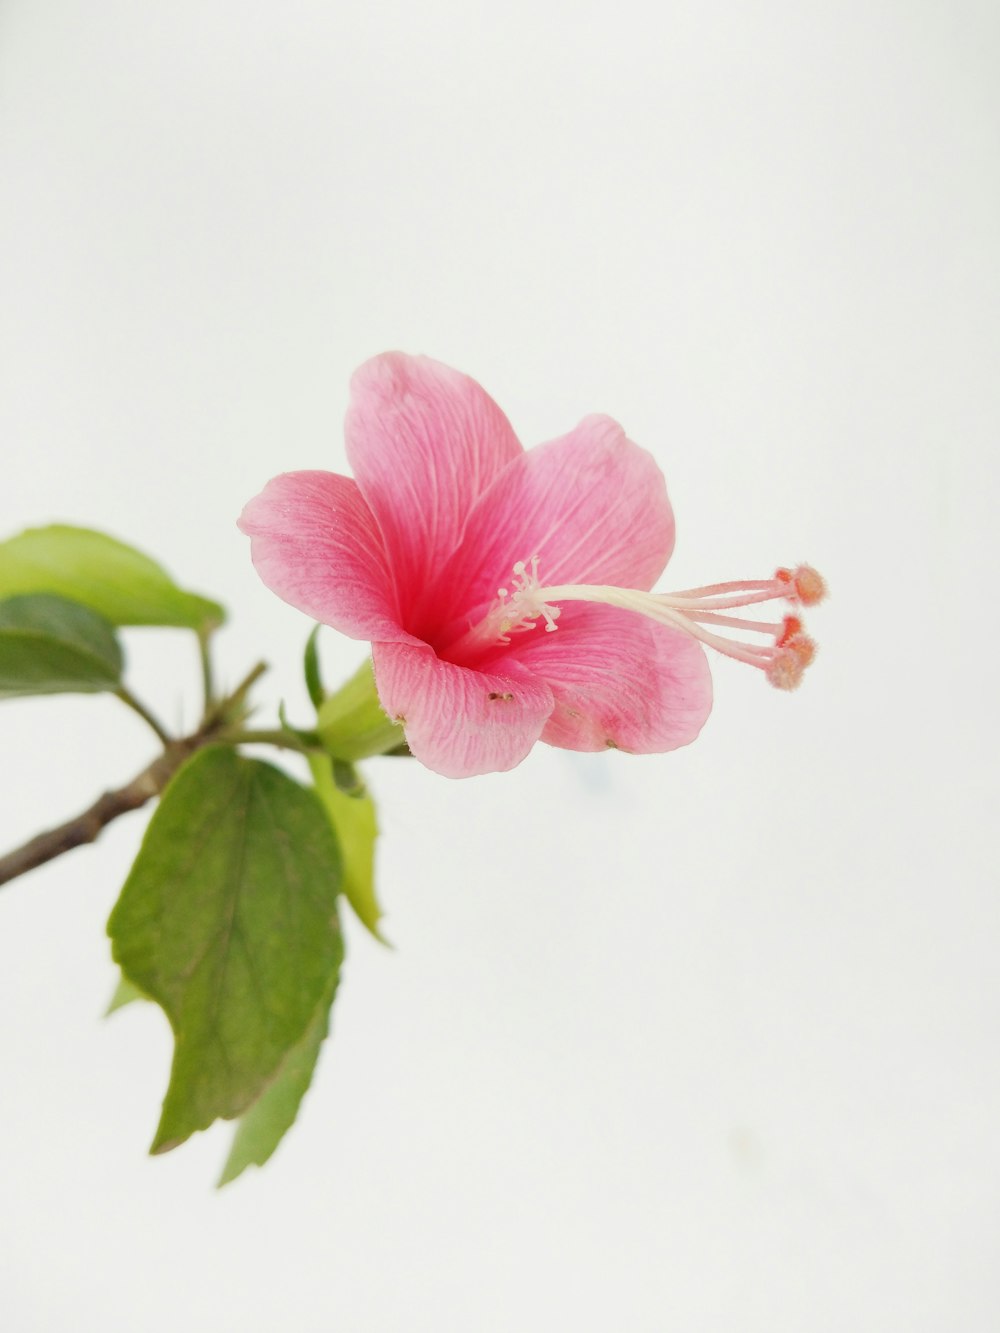 咲くピンクのハイビスカス、クローズアップ写真